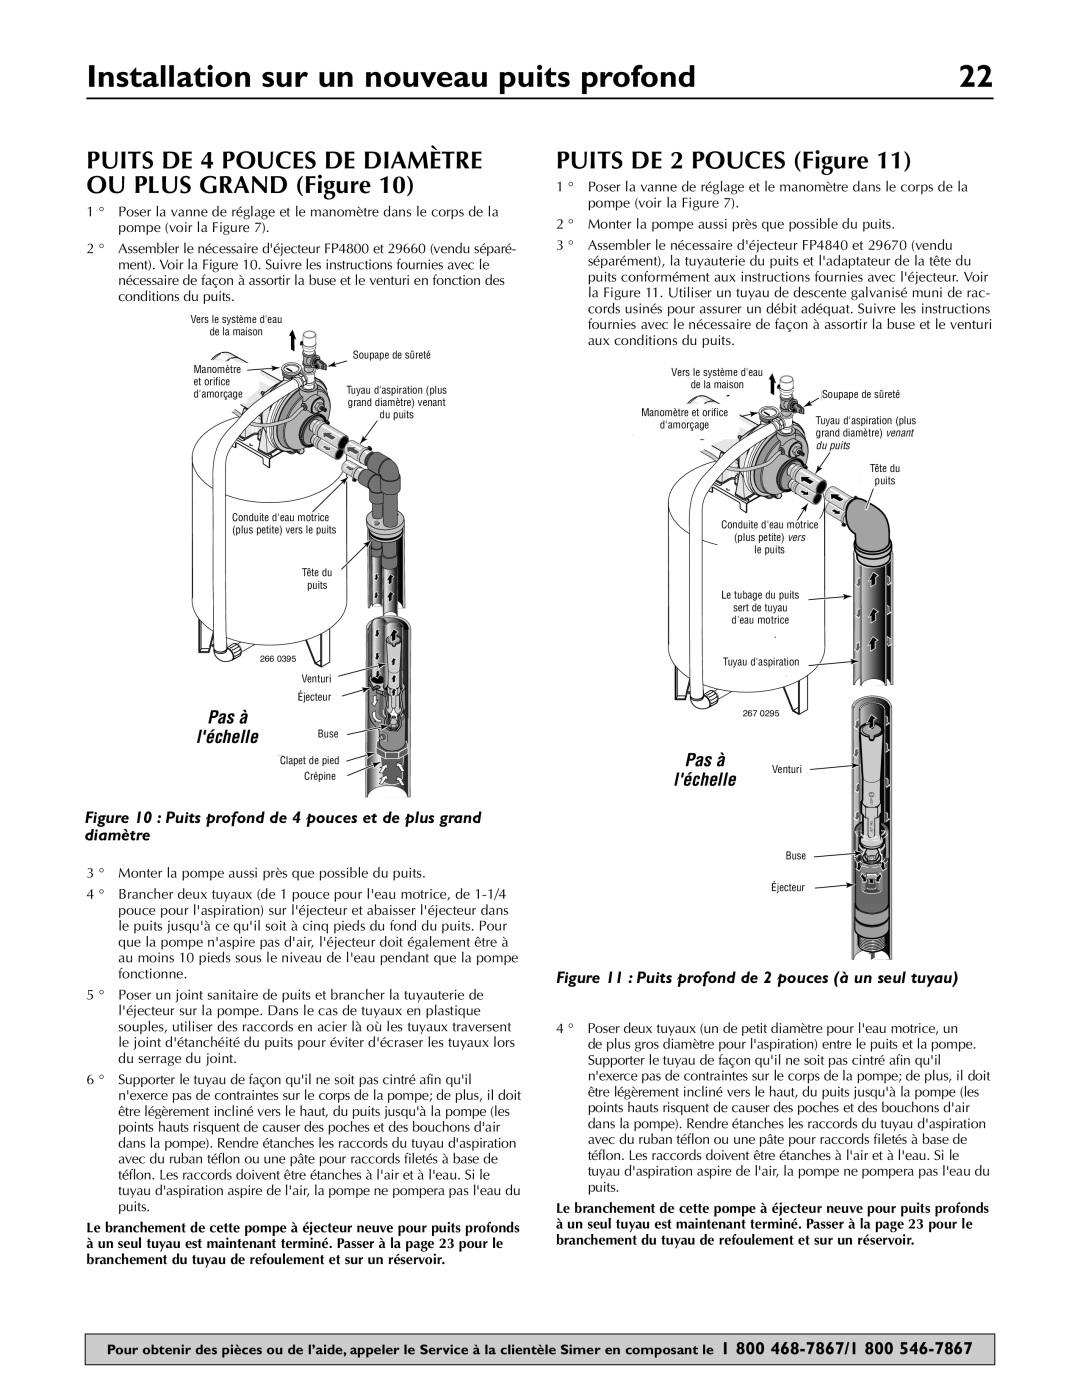 Simer Pumps 3307P, 3310P, 3305P owner manual Installation sur un nouveau puits profond, PUITS DE 2 POUCES Figure, Scale 